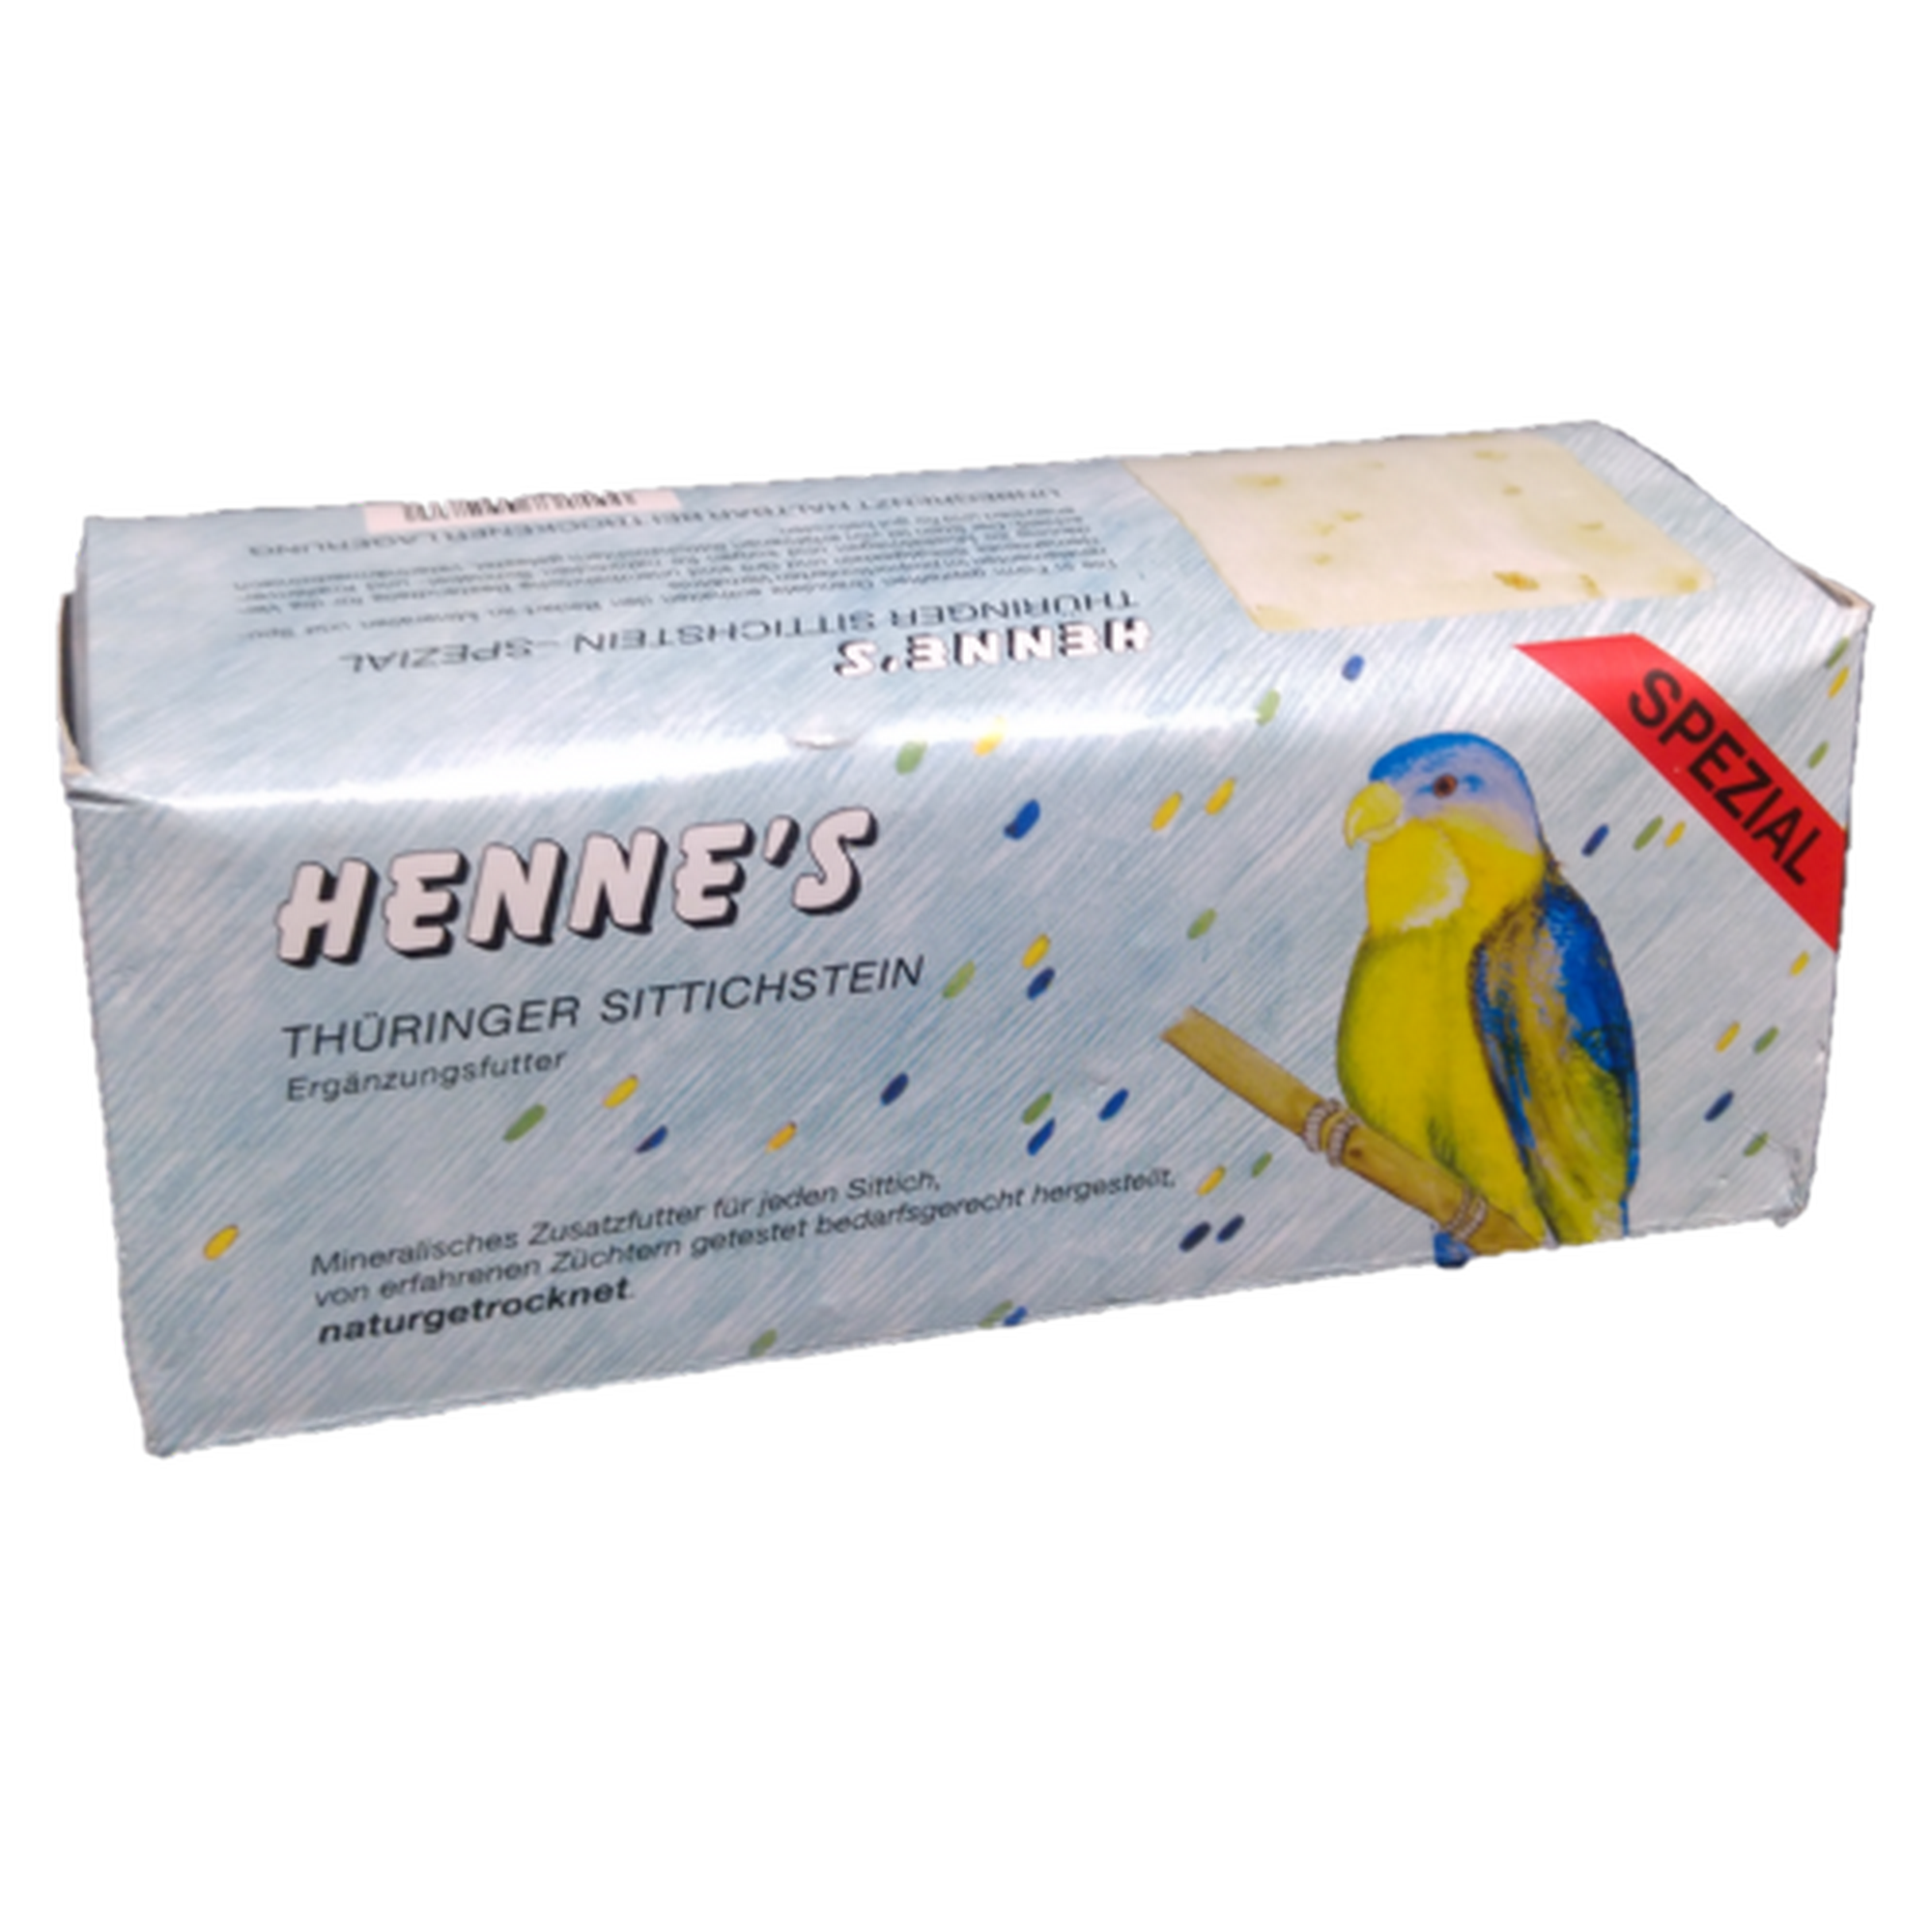 Mineralfutter 'Henne's Sittichsteine' 4 Stück + product picture